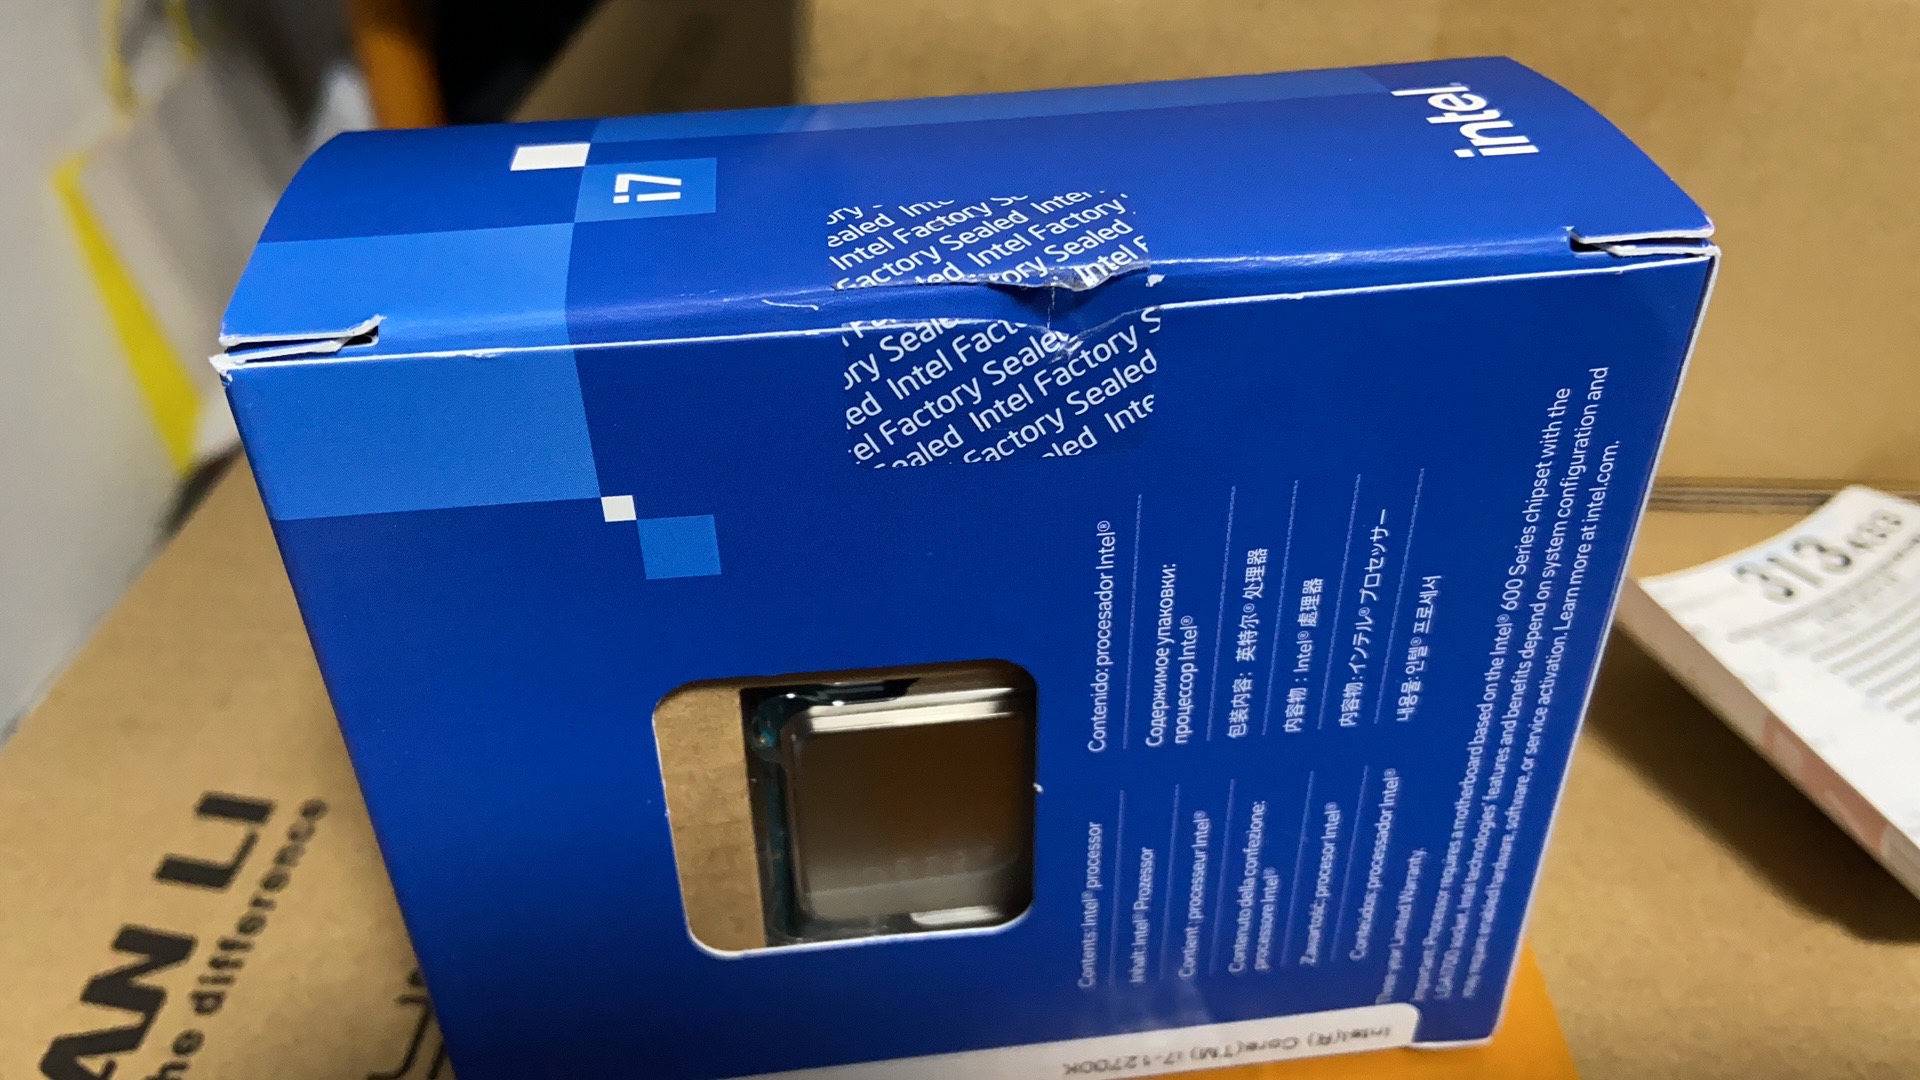 【新品】インテル Core i7 12700K BOX